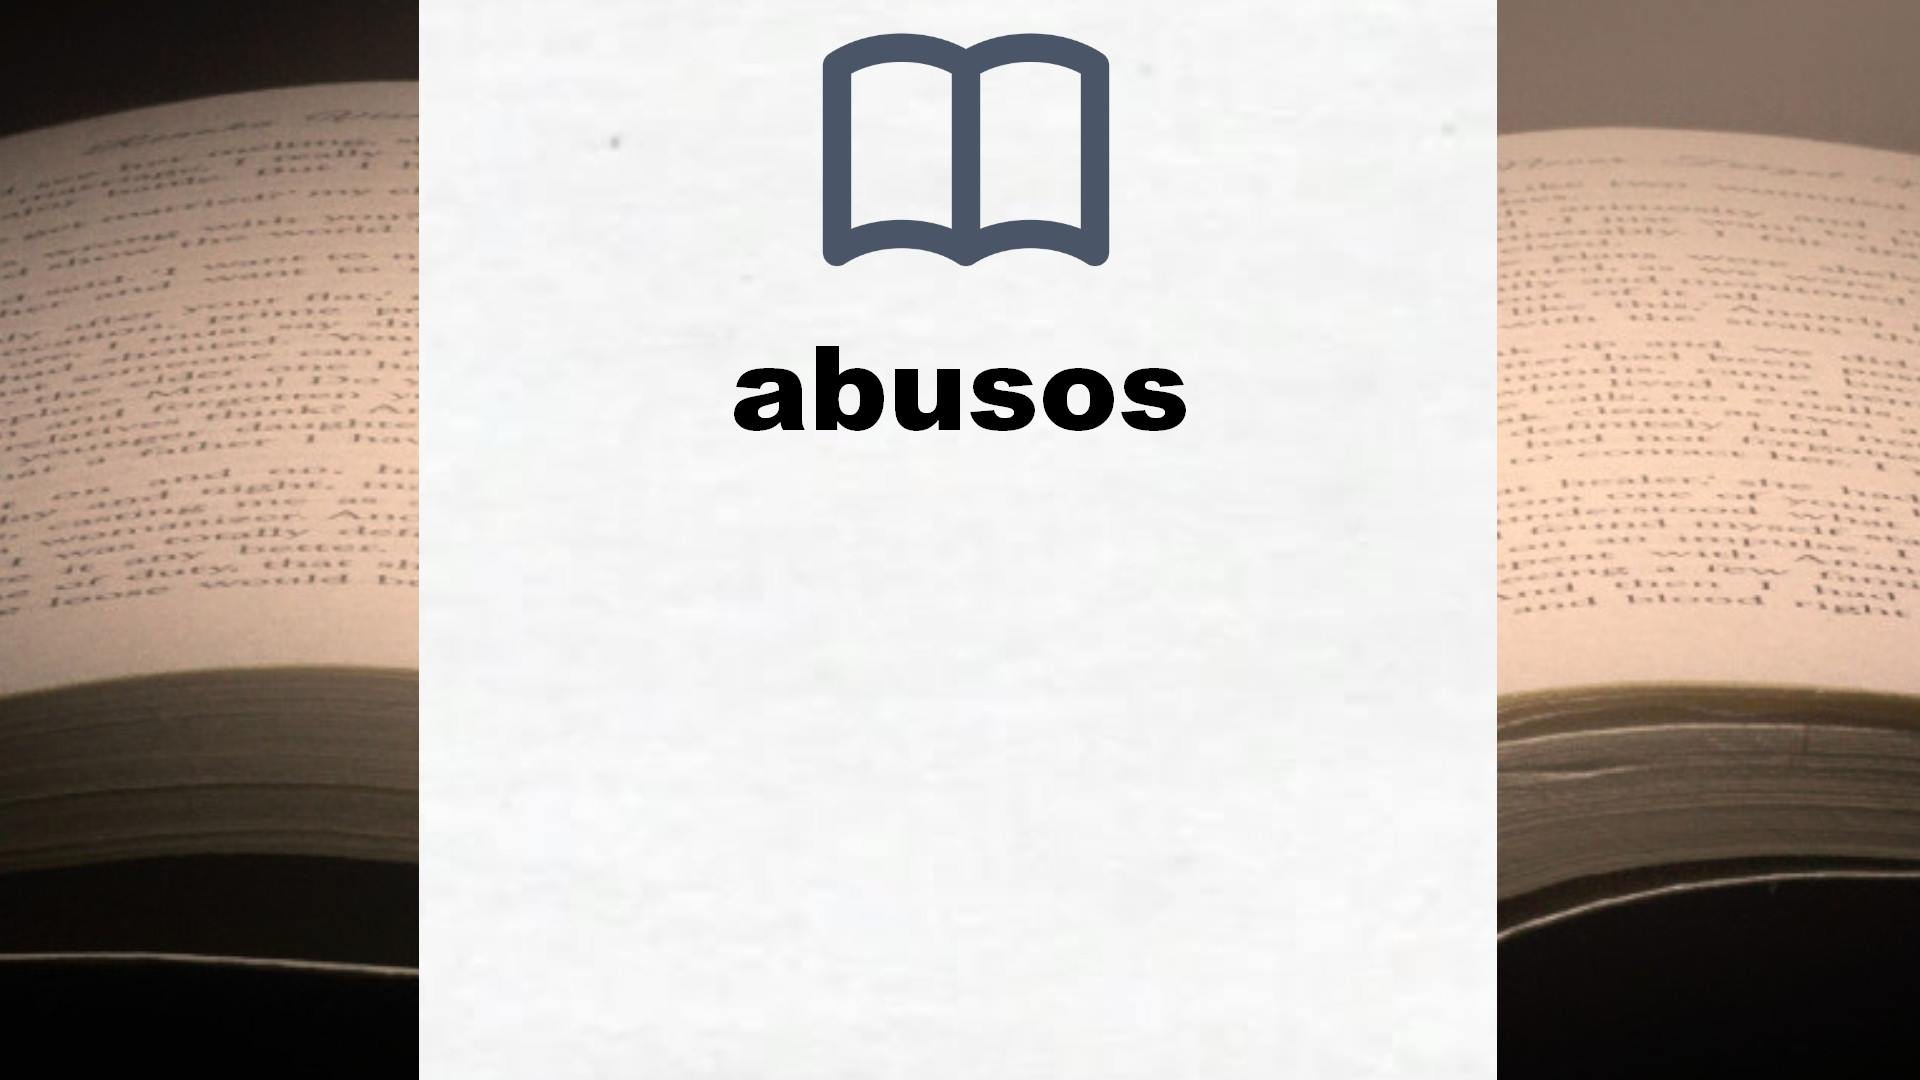 Libros sobre abusos